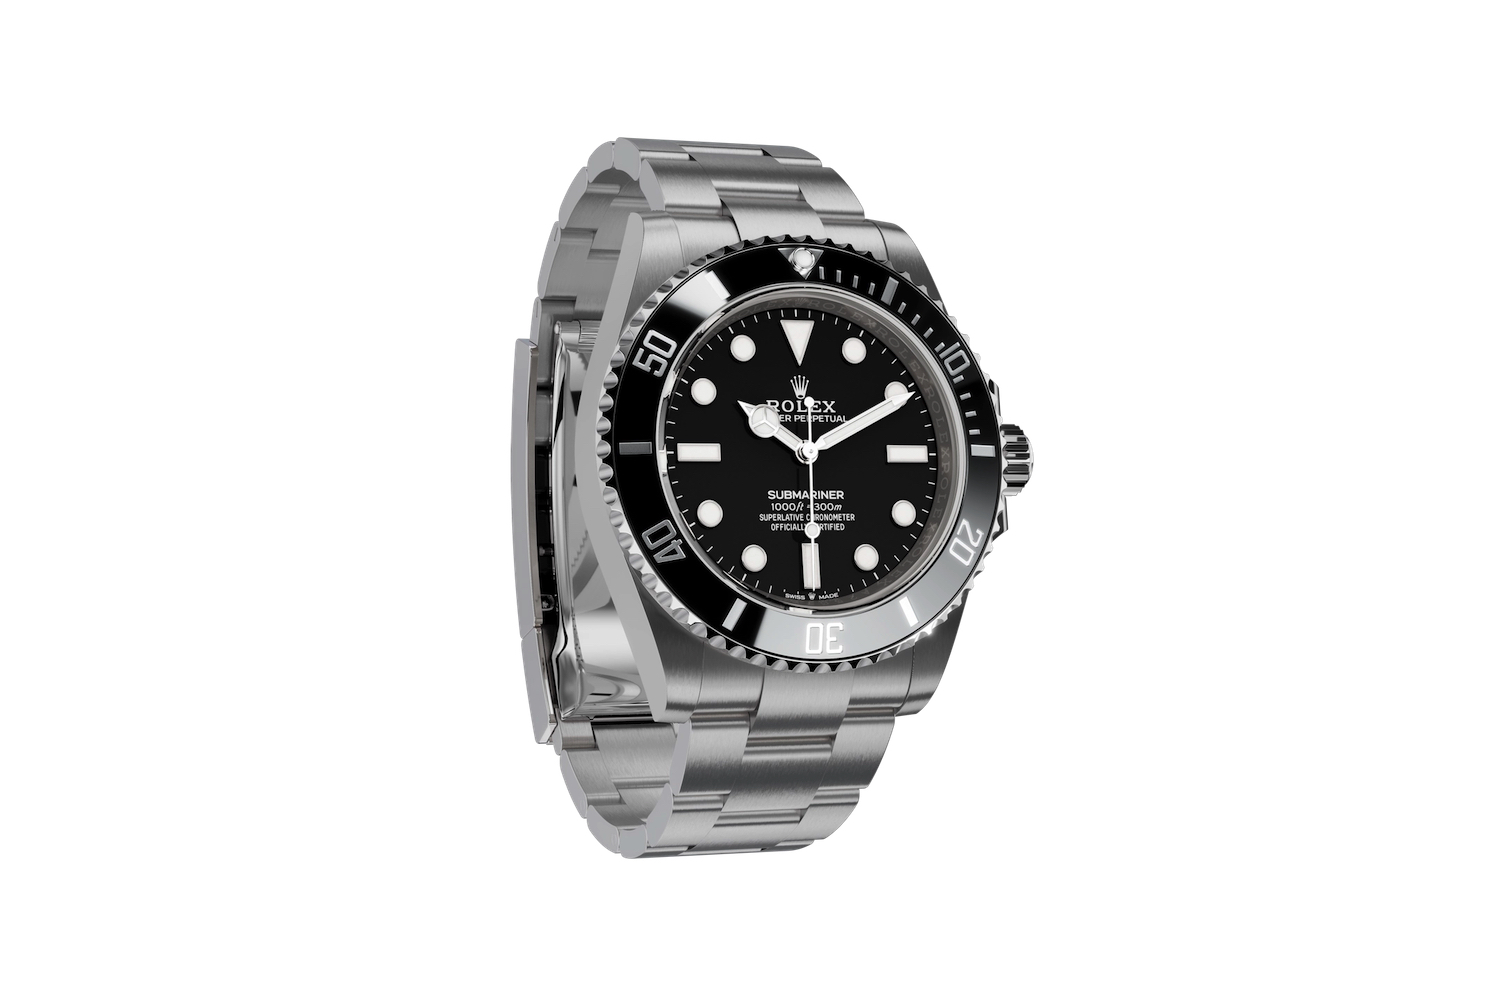 Uma imagem promocional do relógio Rolex Submariner.